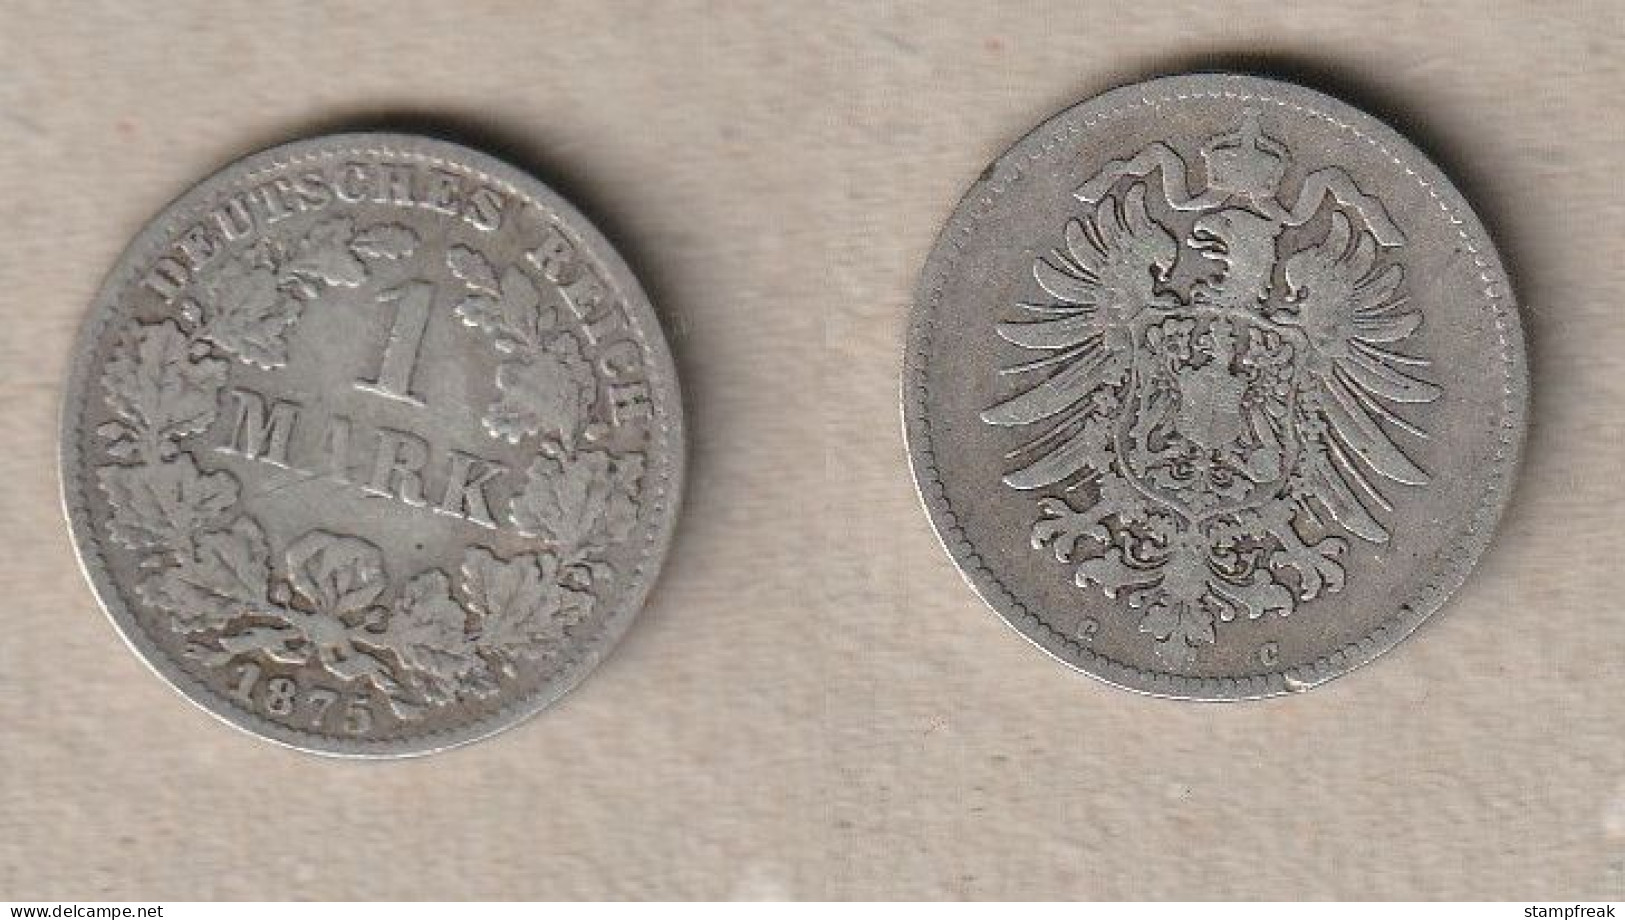 02071) Deutsches Kaiserreich, 1 Mark 1875C - 1 Mark